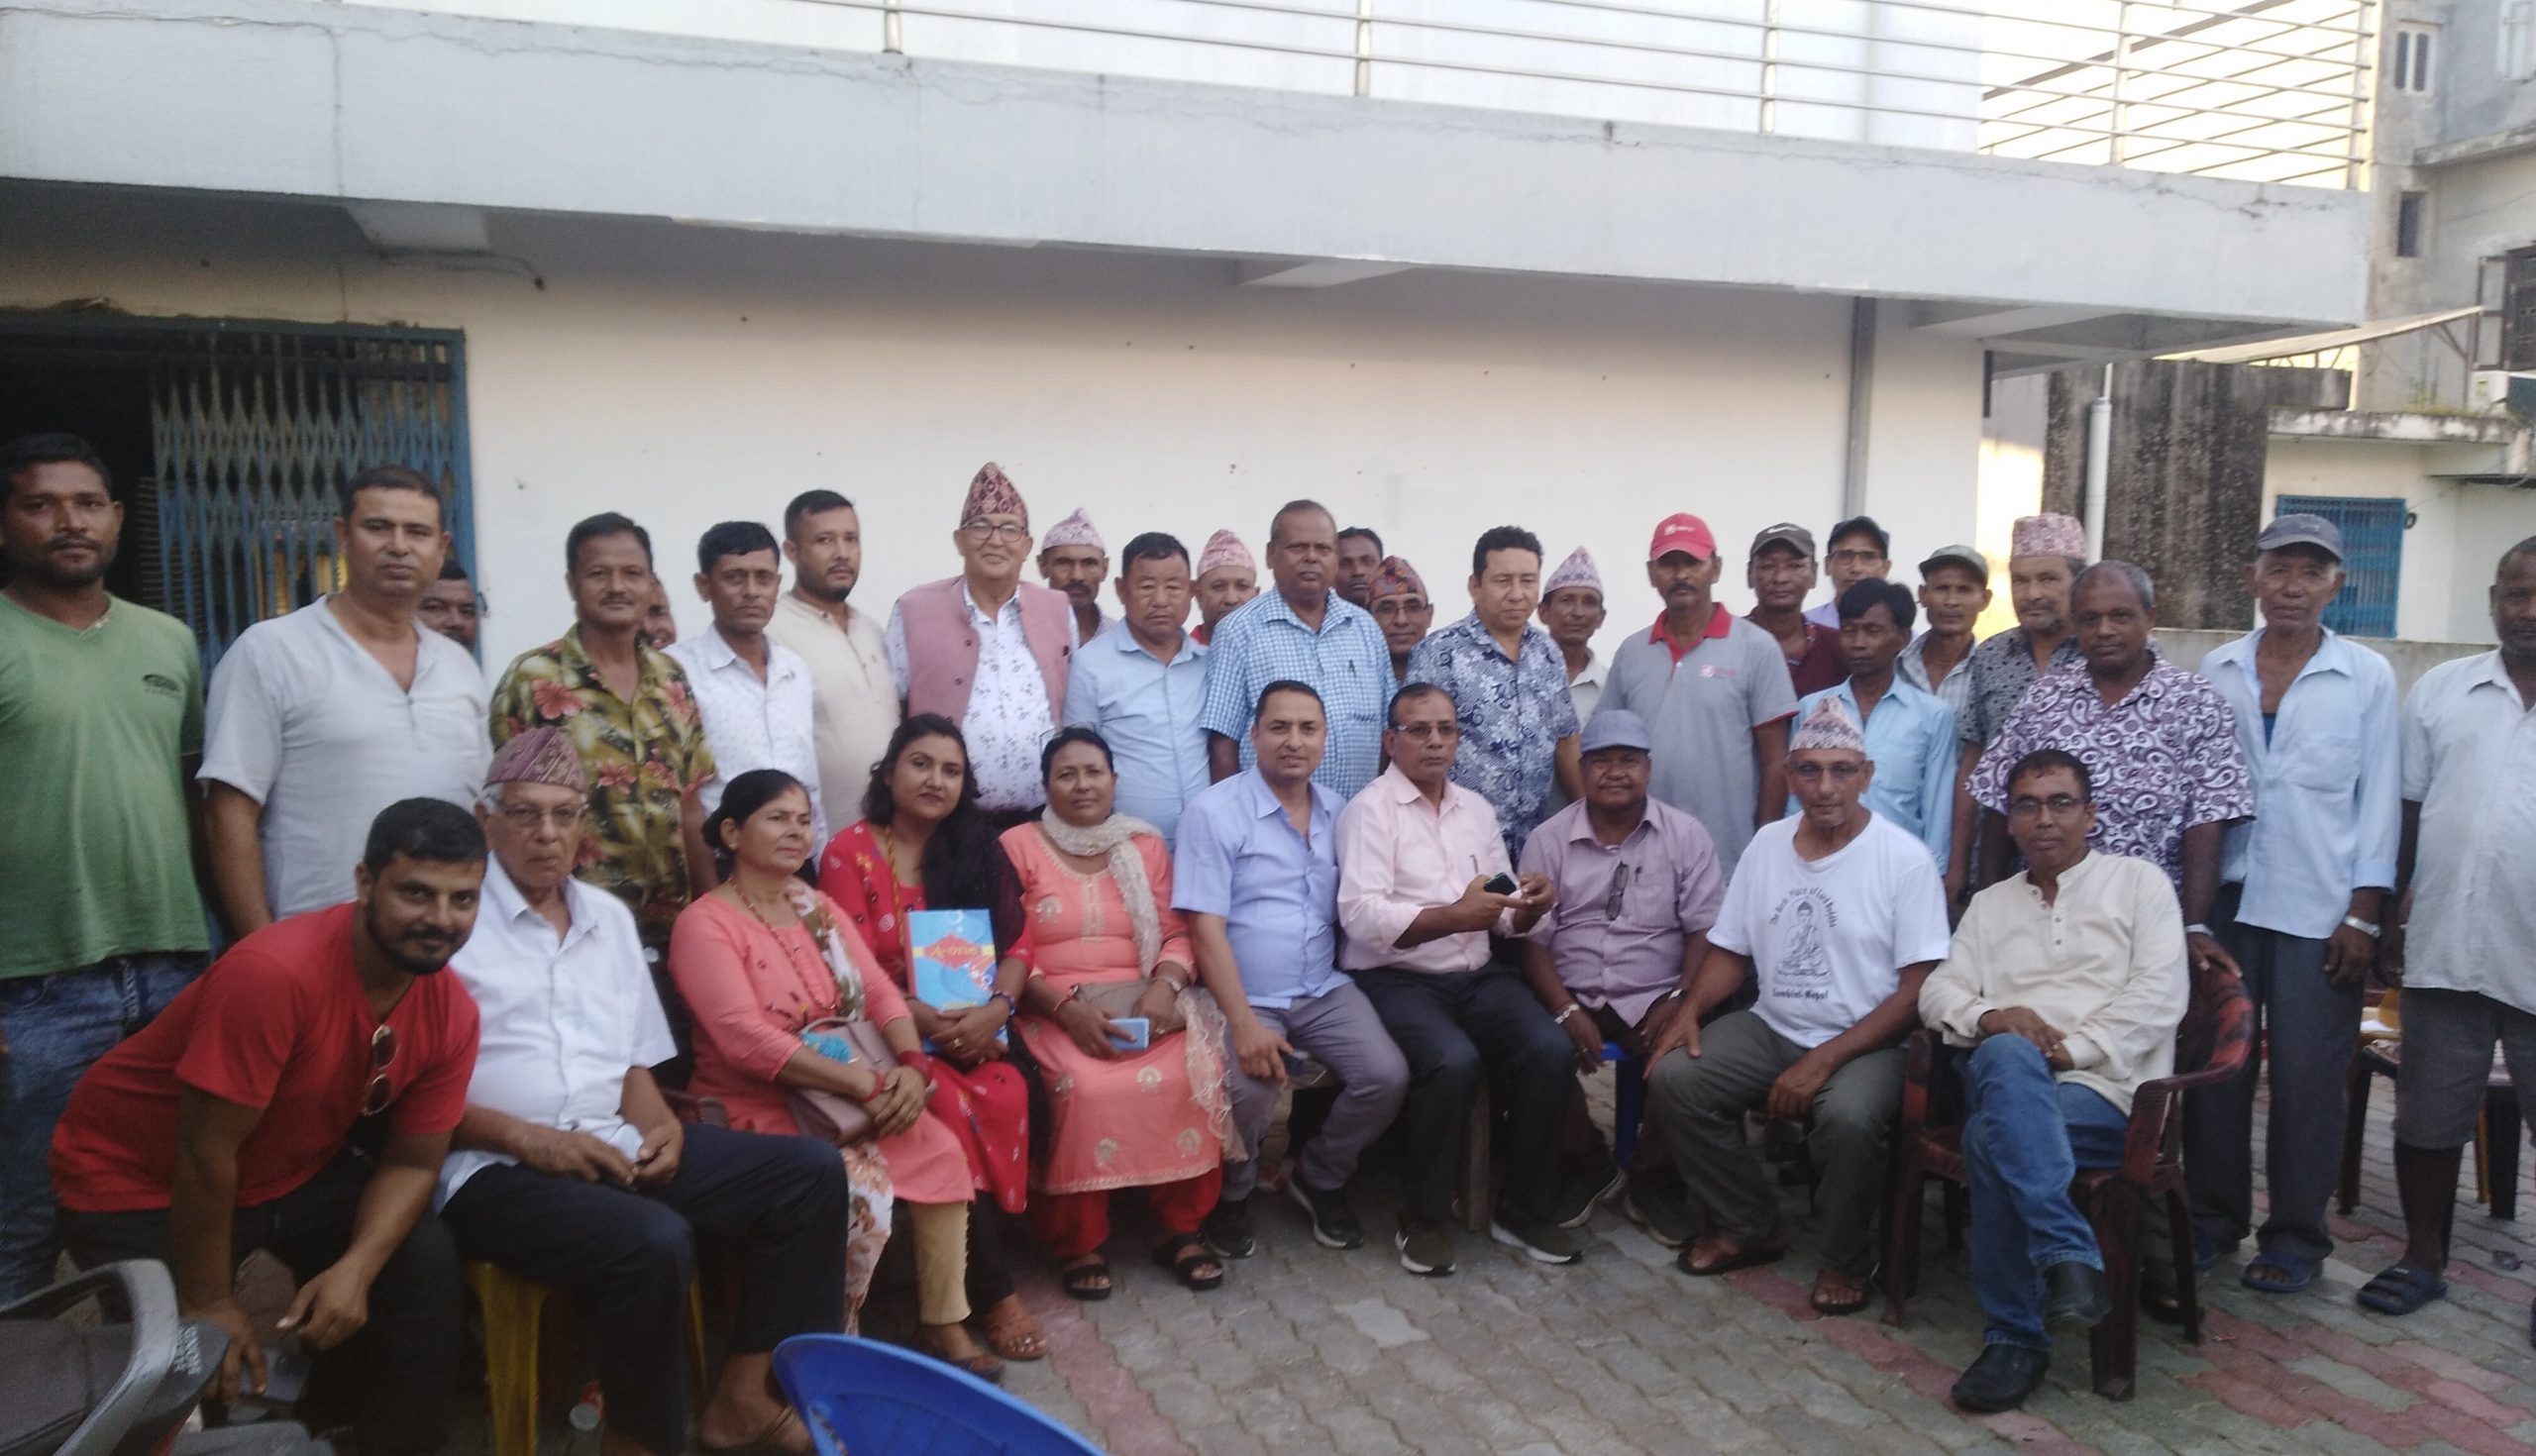 झापा क्षेत्र नं. ५ मा नागरिक समाज गठन, अध्यक्षमा नेपाली